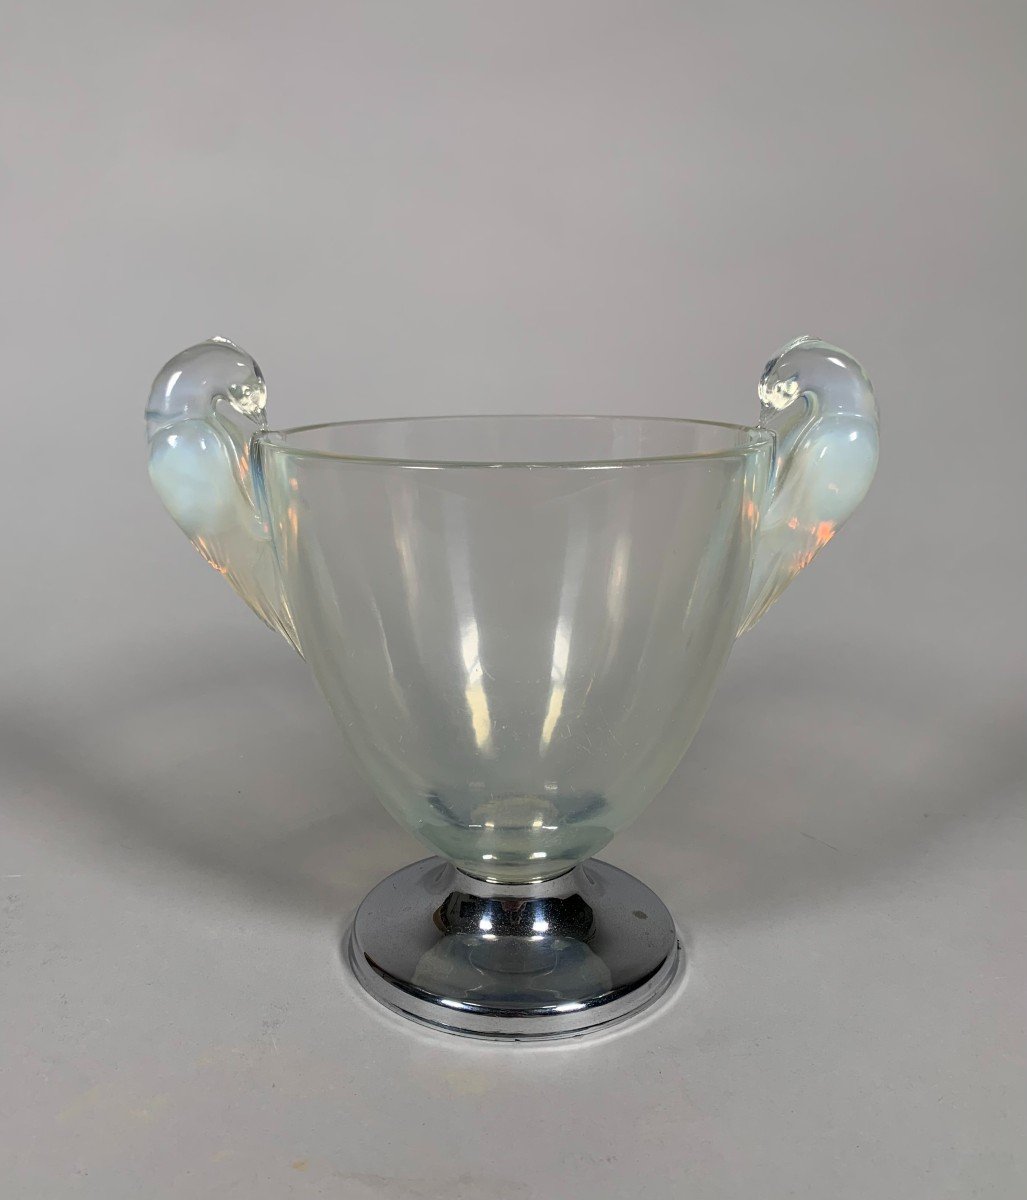 René Lalique (1860-1940) Ornis Model Vase 1926 Art Nouveau